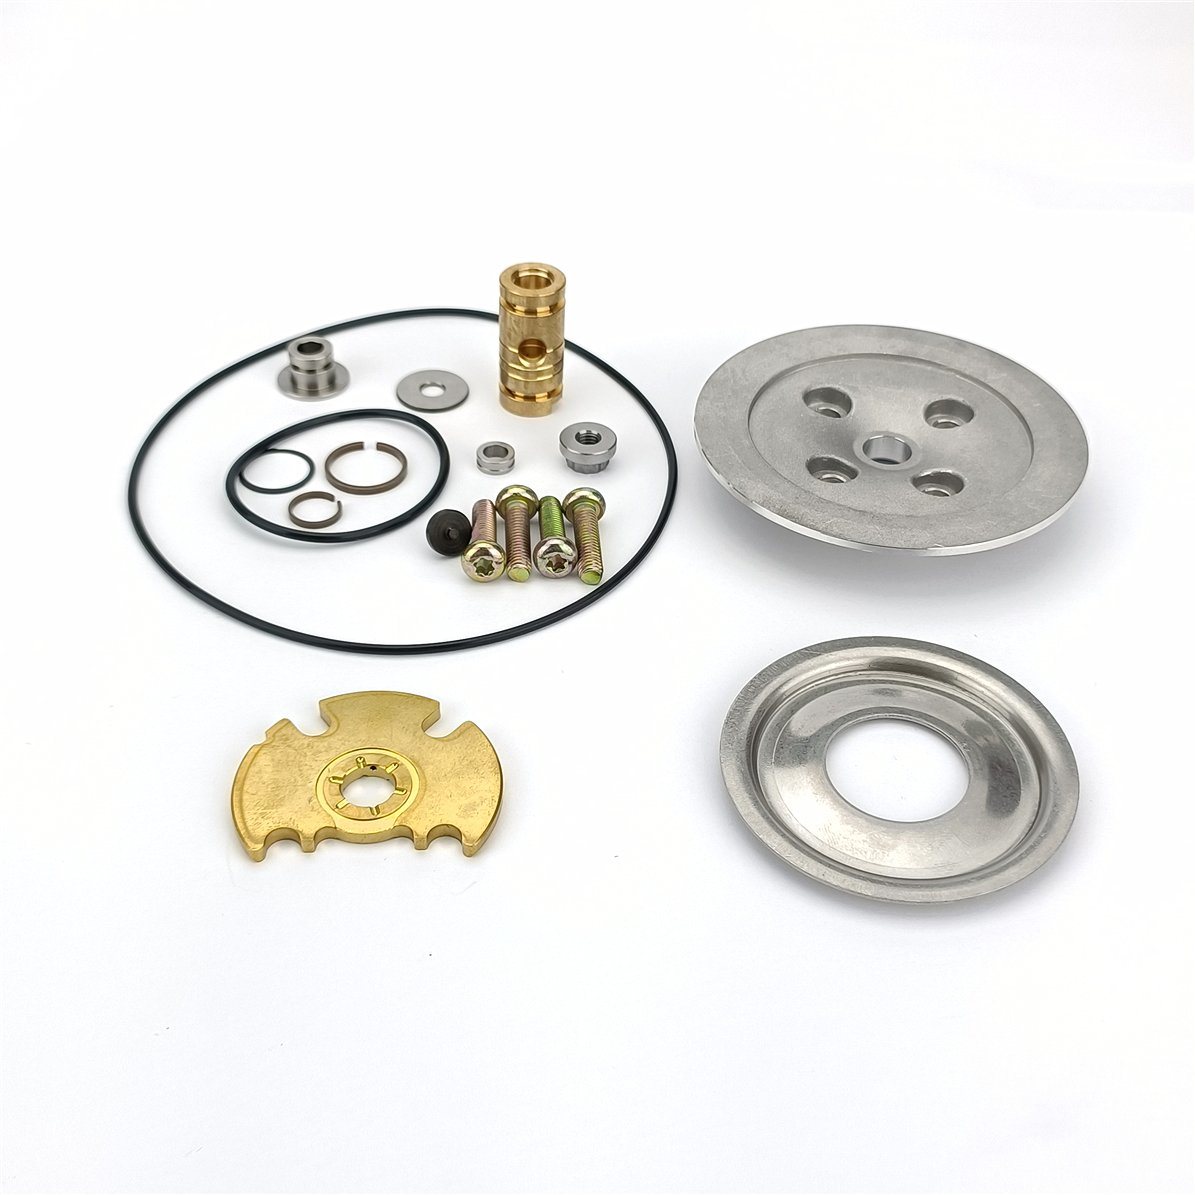 Repair Kit for Gt2260s/786332-0011/786332-0007